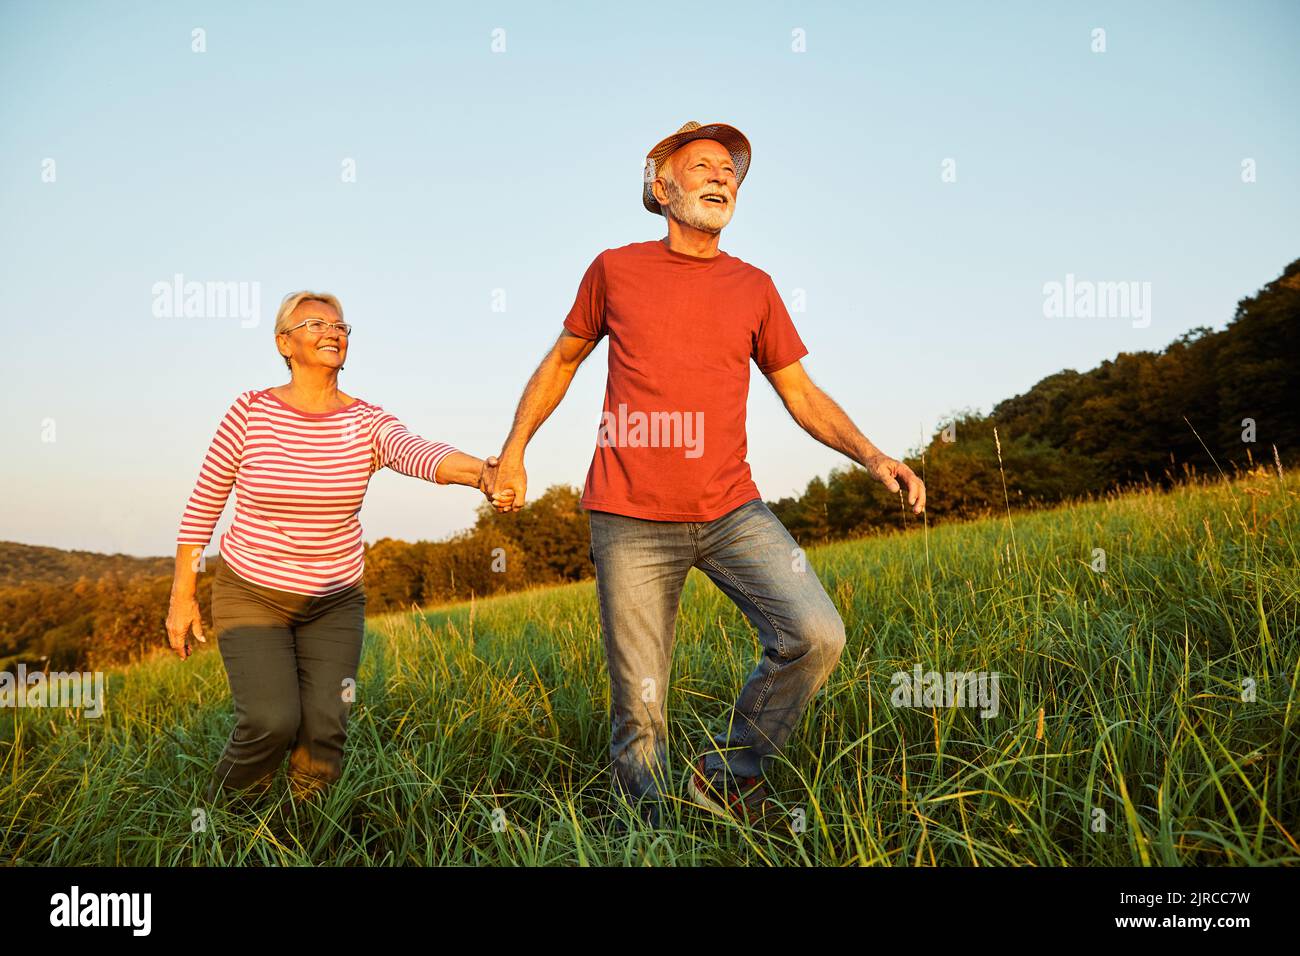 Frau Mann Outdoor Senior Paar glücklich Lebensstil Ruhestand zusammen lächelnd Liebe alte Natur reifen ältere Vitalität aktiv Stockfoto